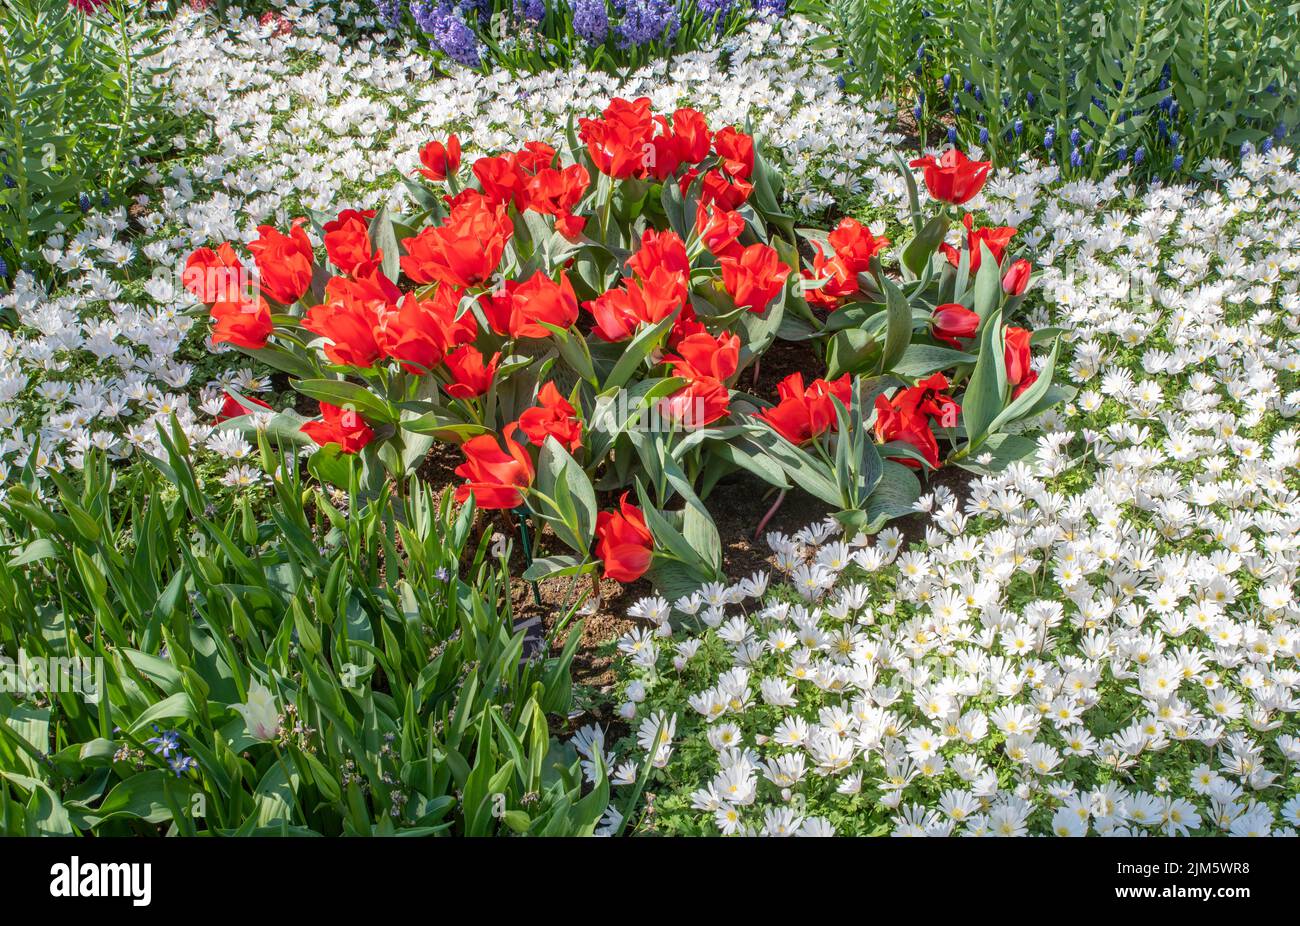 Une belle photo de tulipes rouges entourée de plantes de glace blanches dans le jardin Banque D'Images